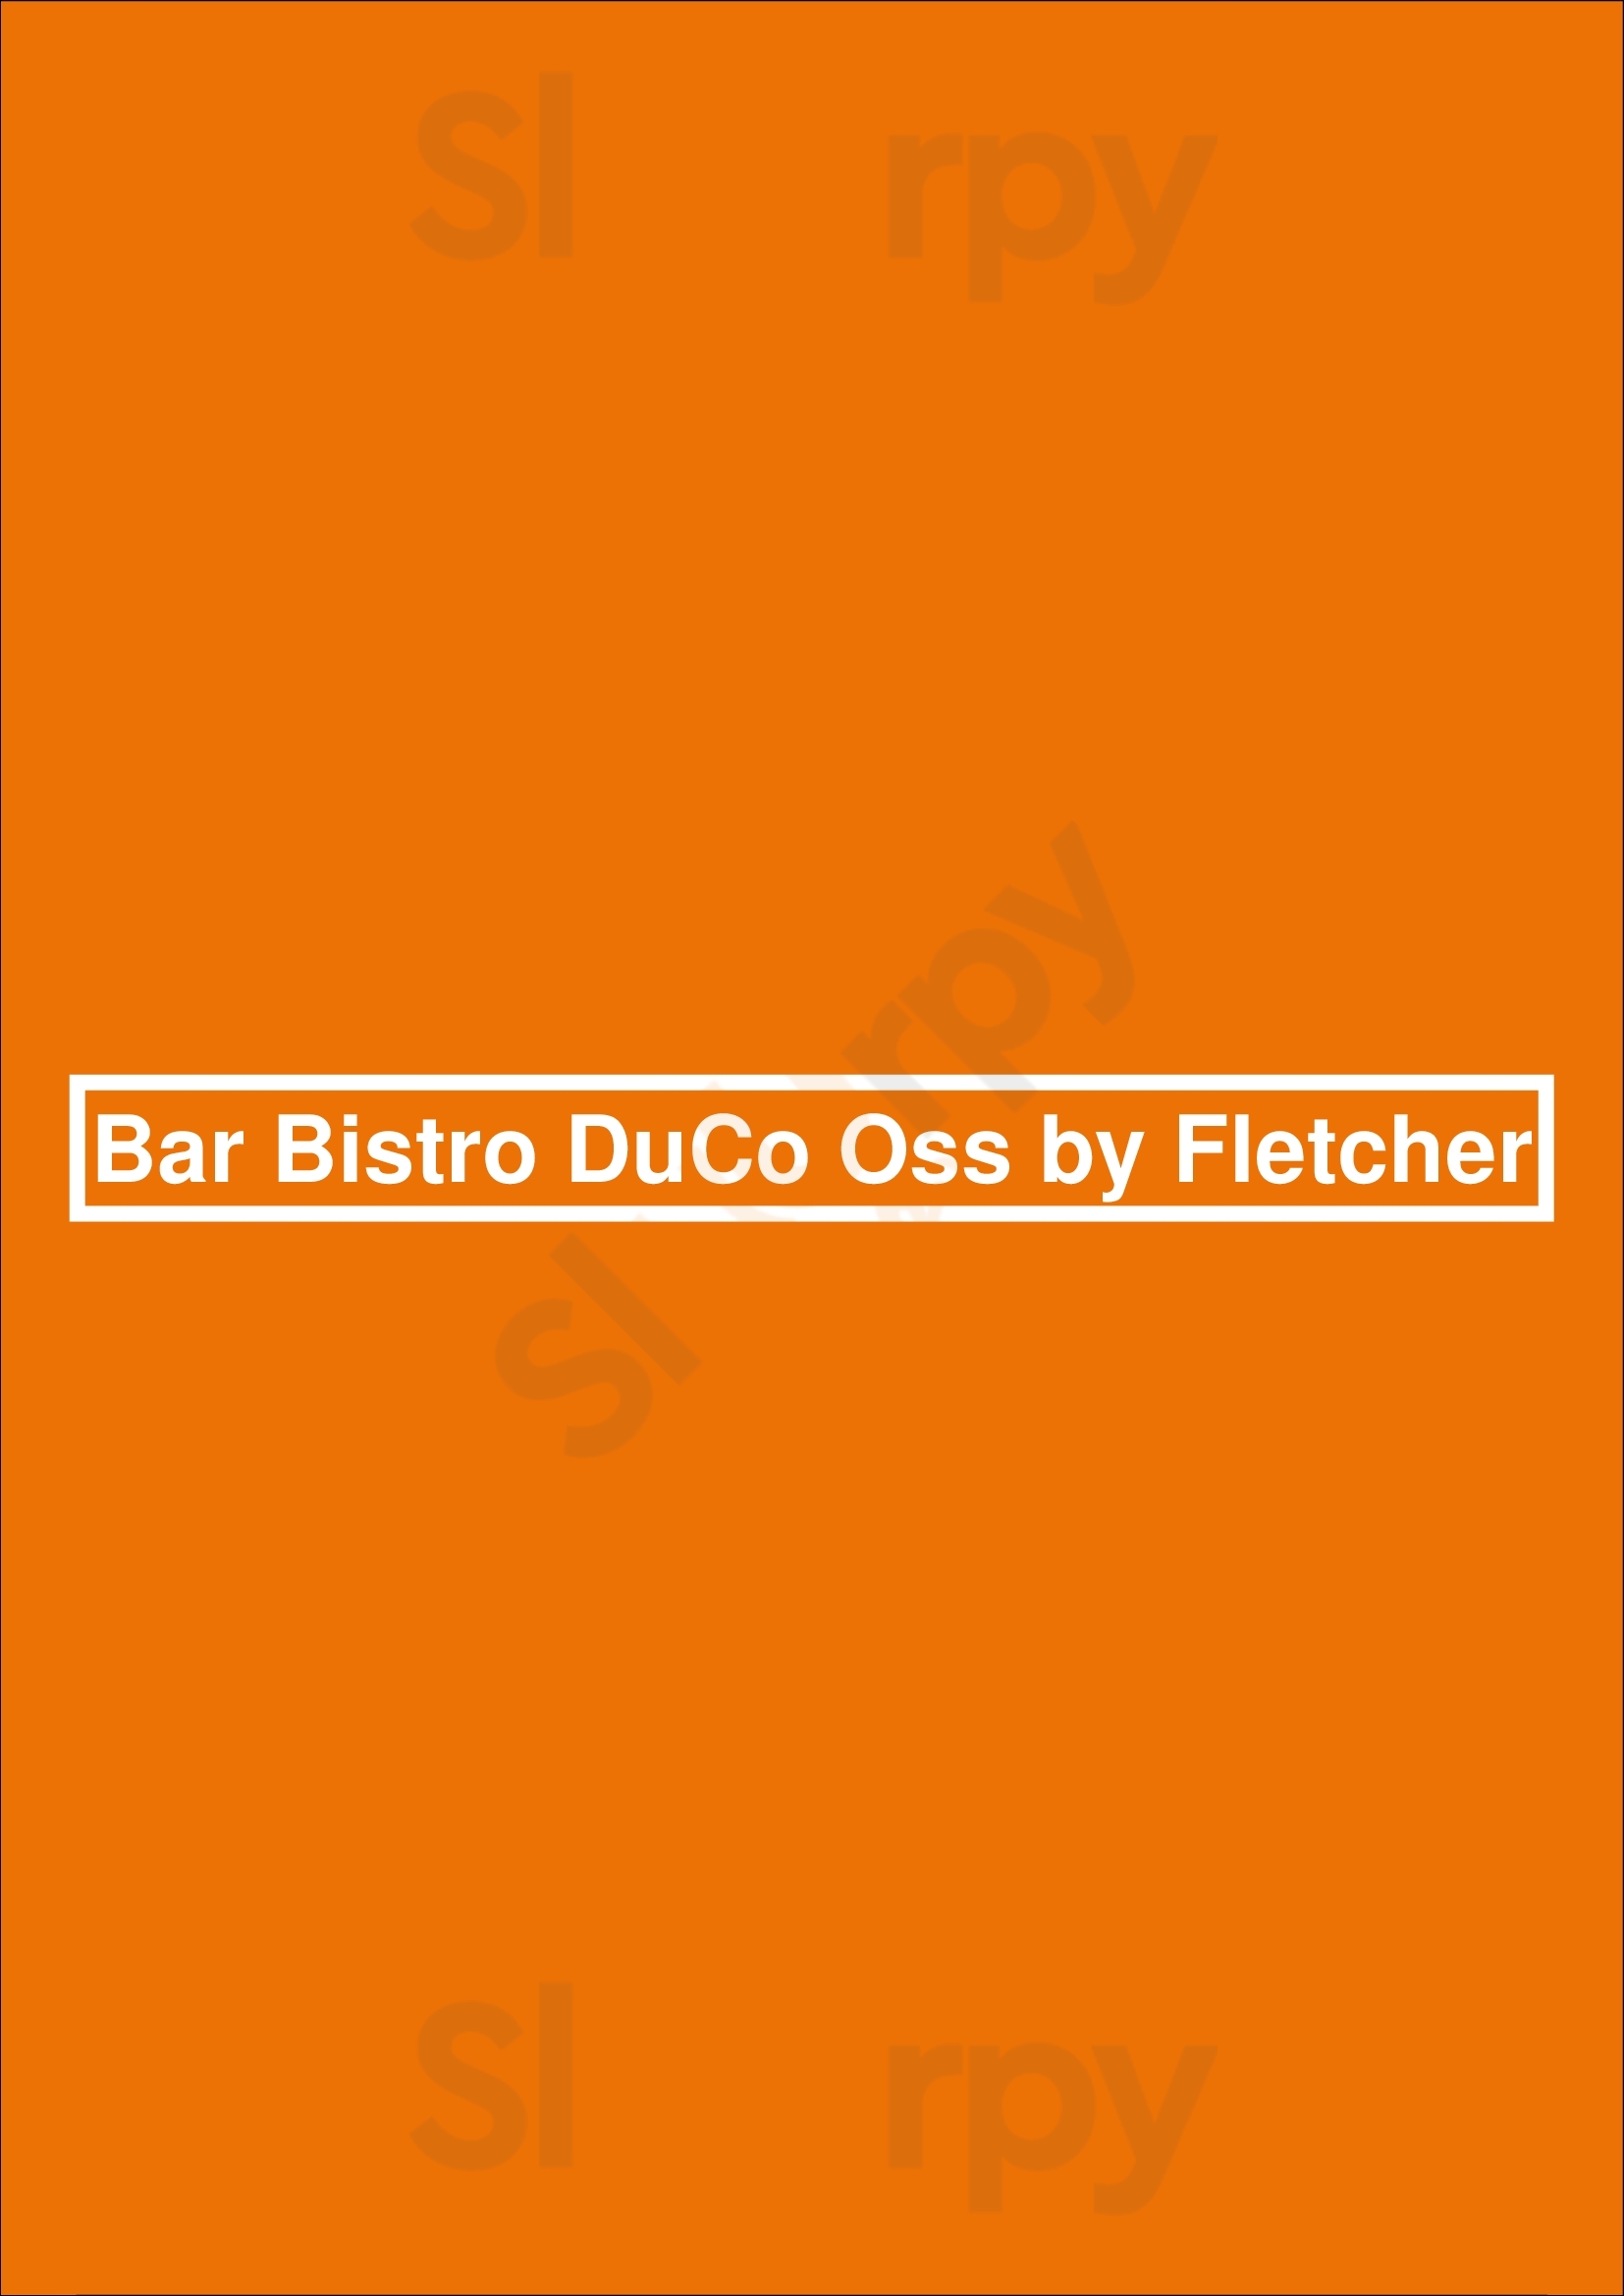 Bar Bistro Duco Oss By Fletcher Oss Menu - 1